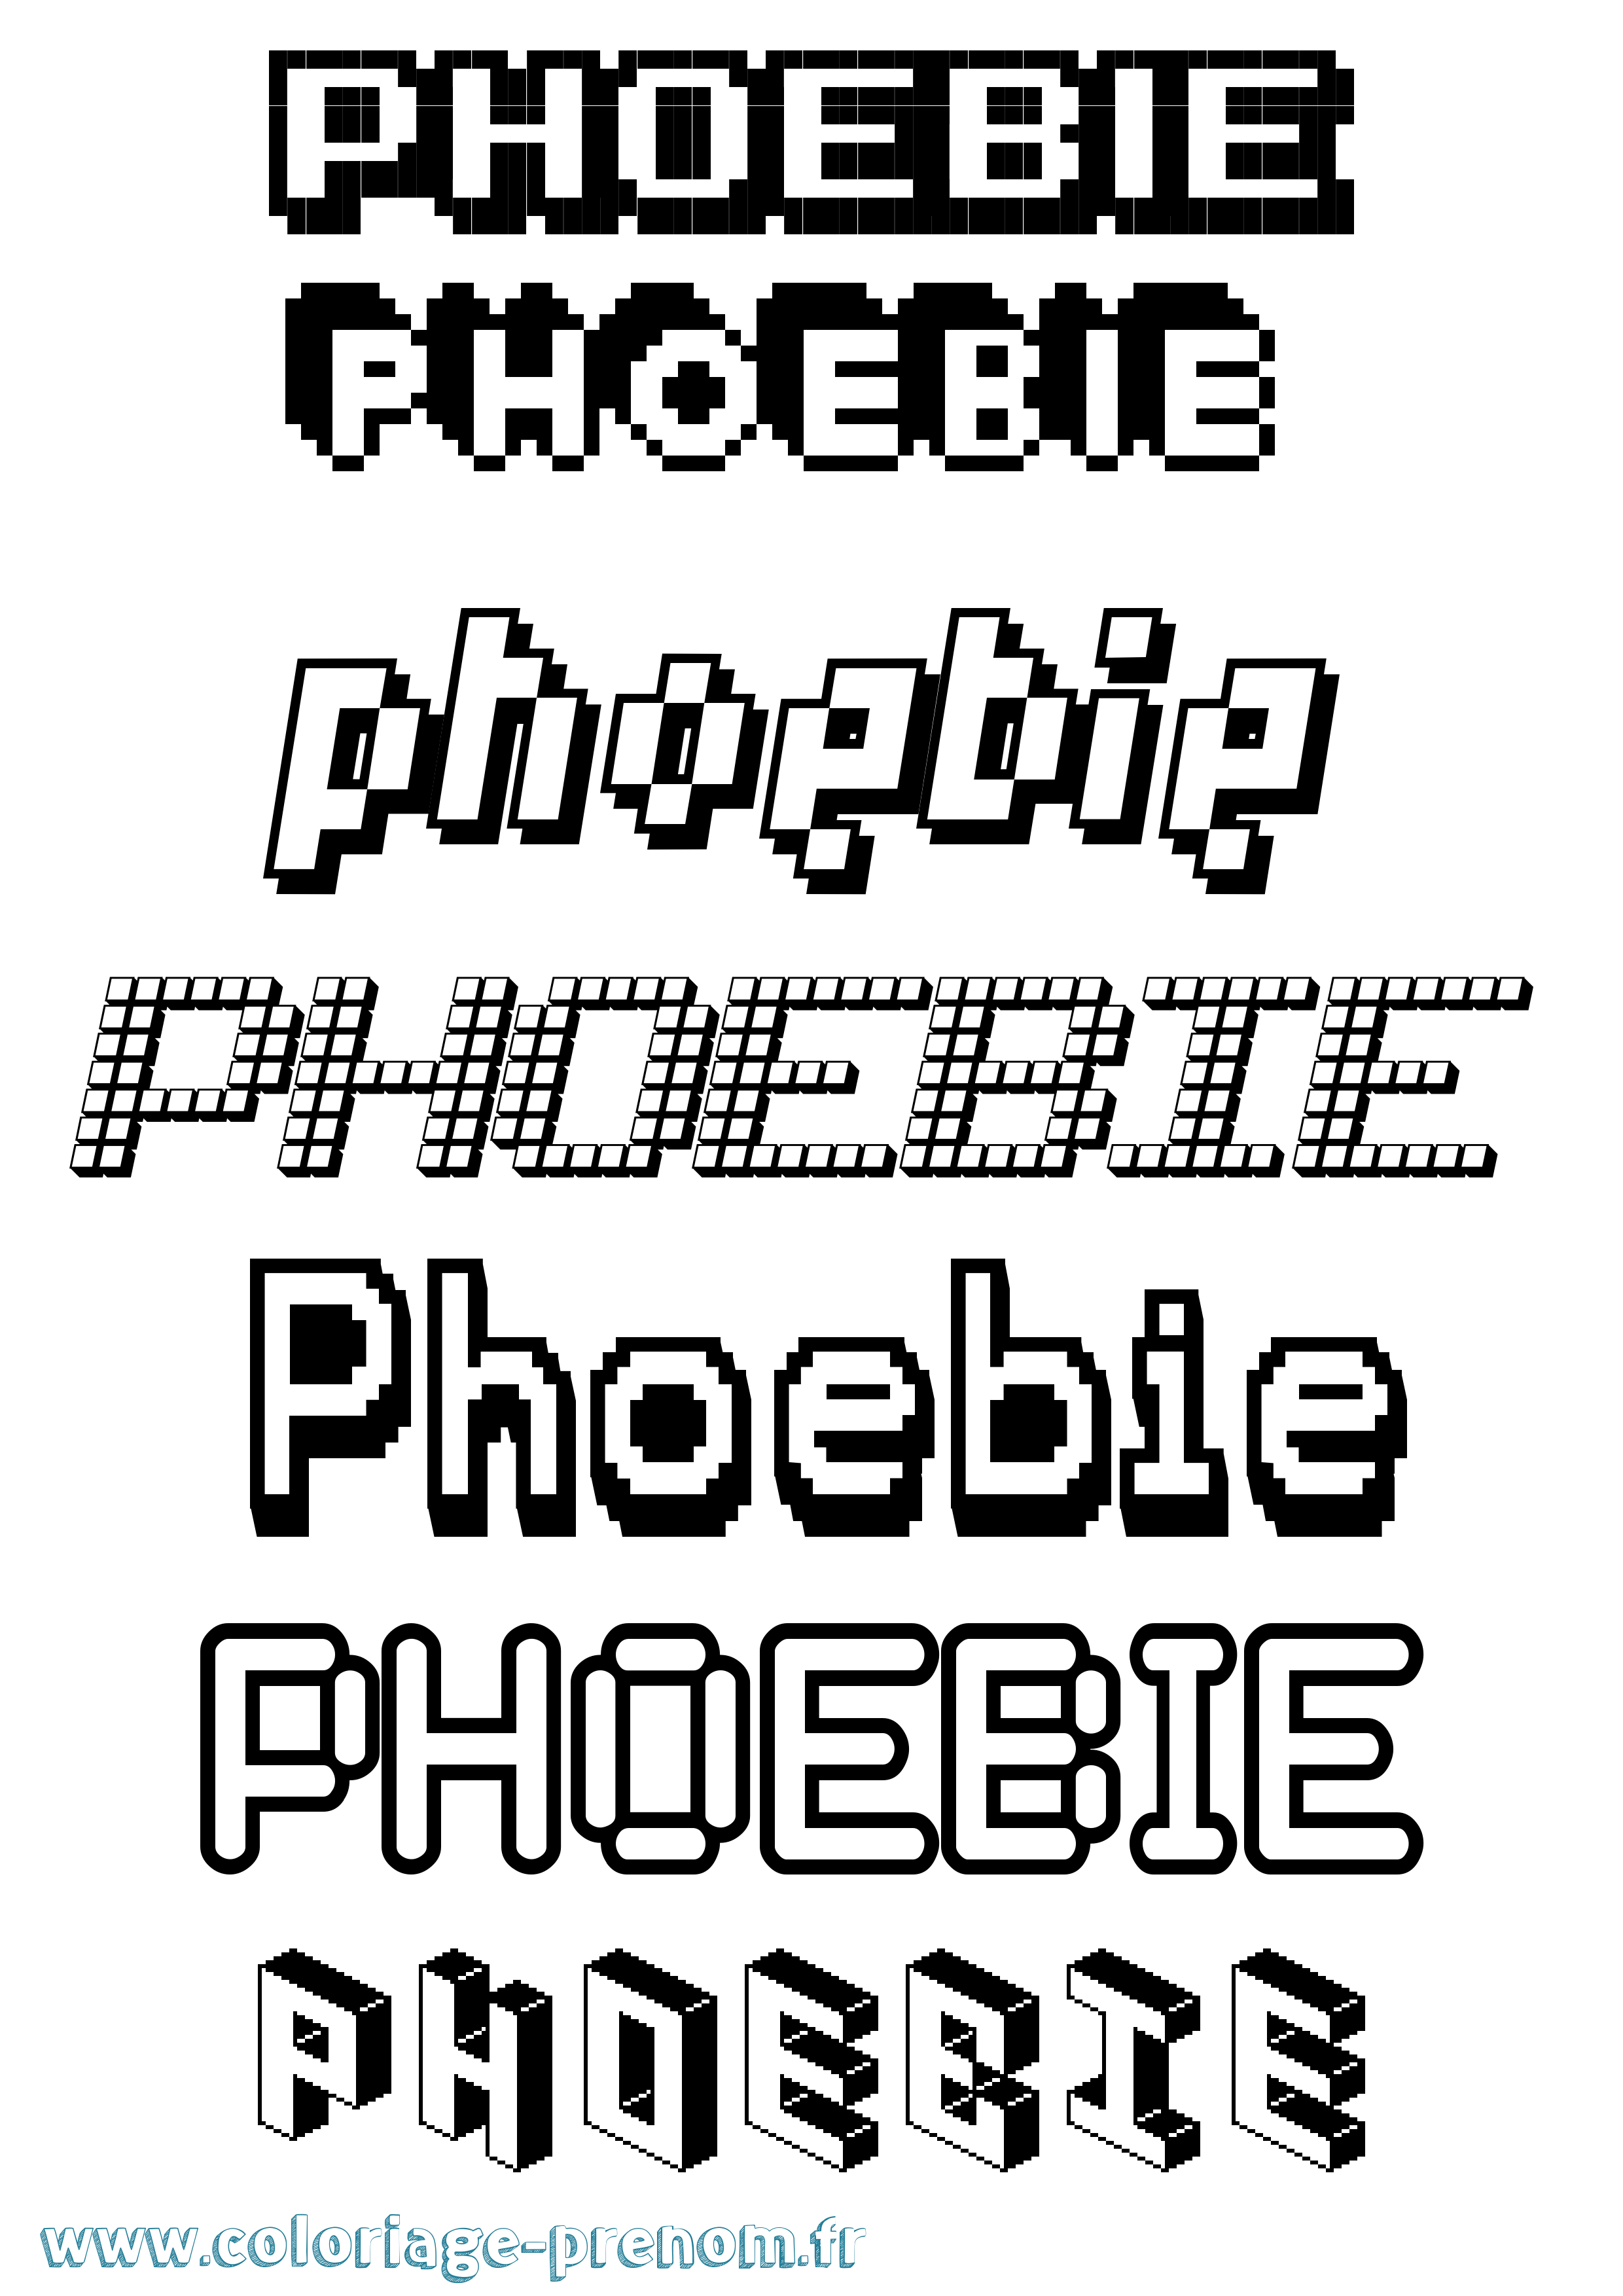 Coloriage prénom Phoebie Pixel